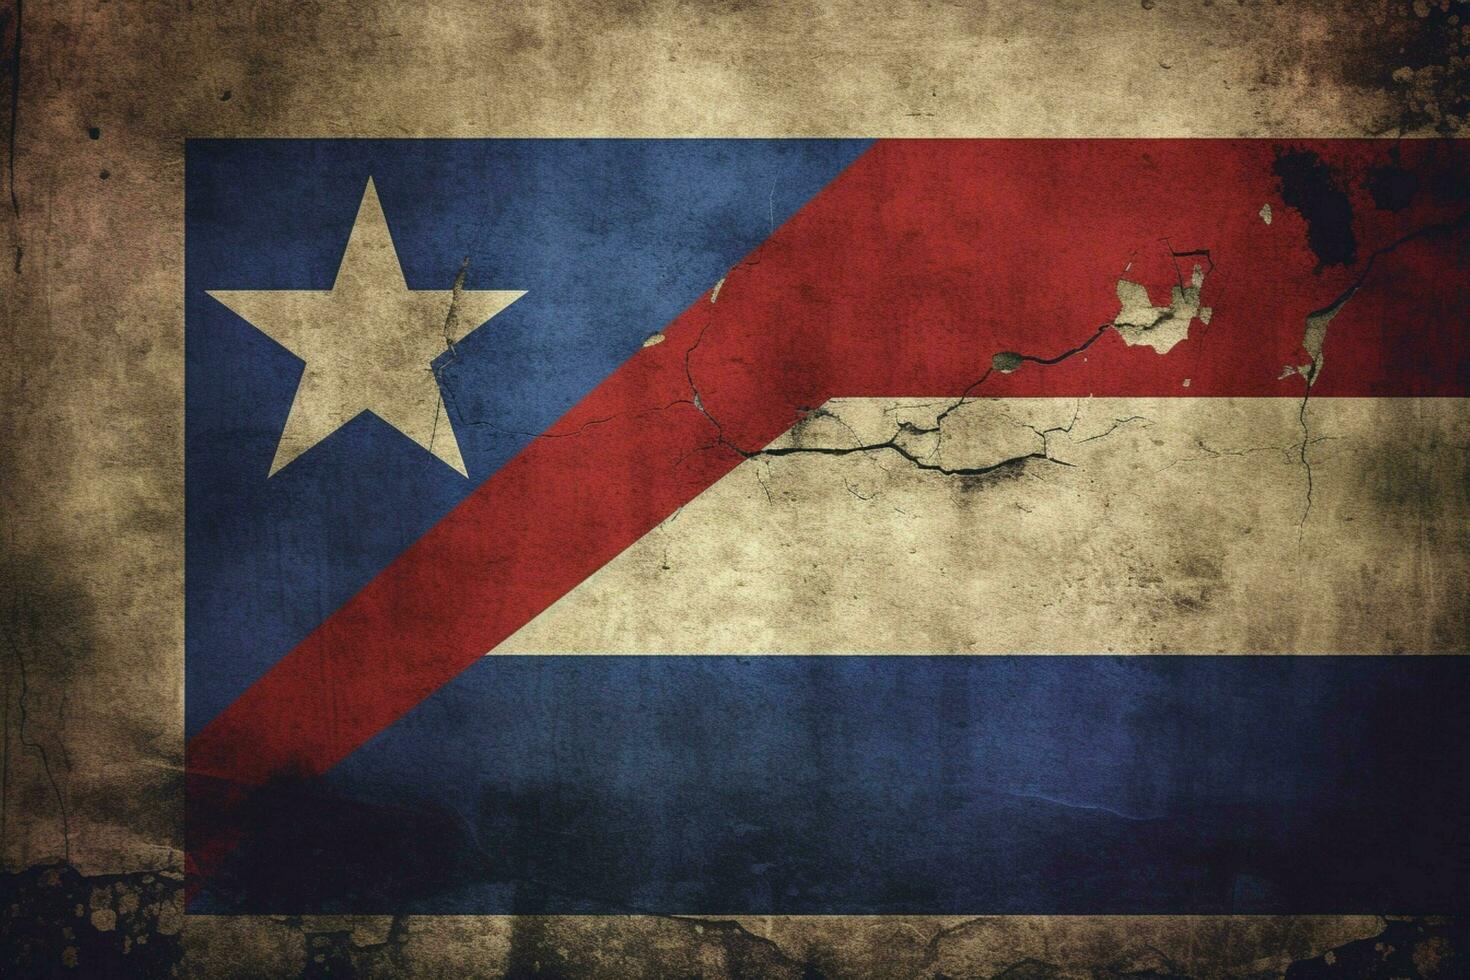 flag wallpaper of Cuba photo